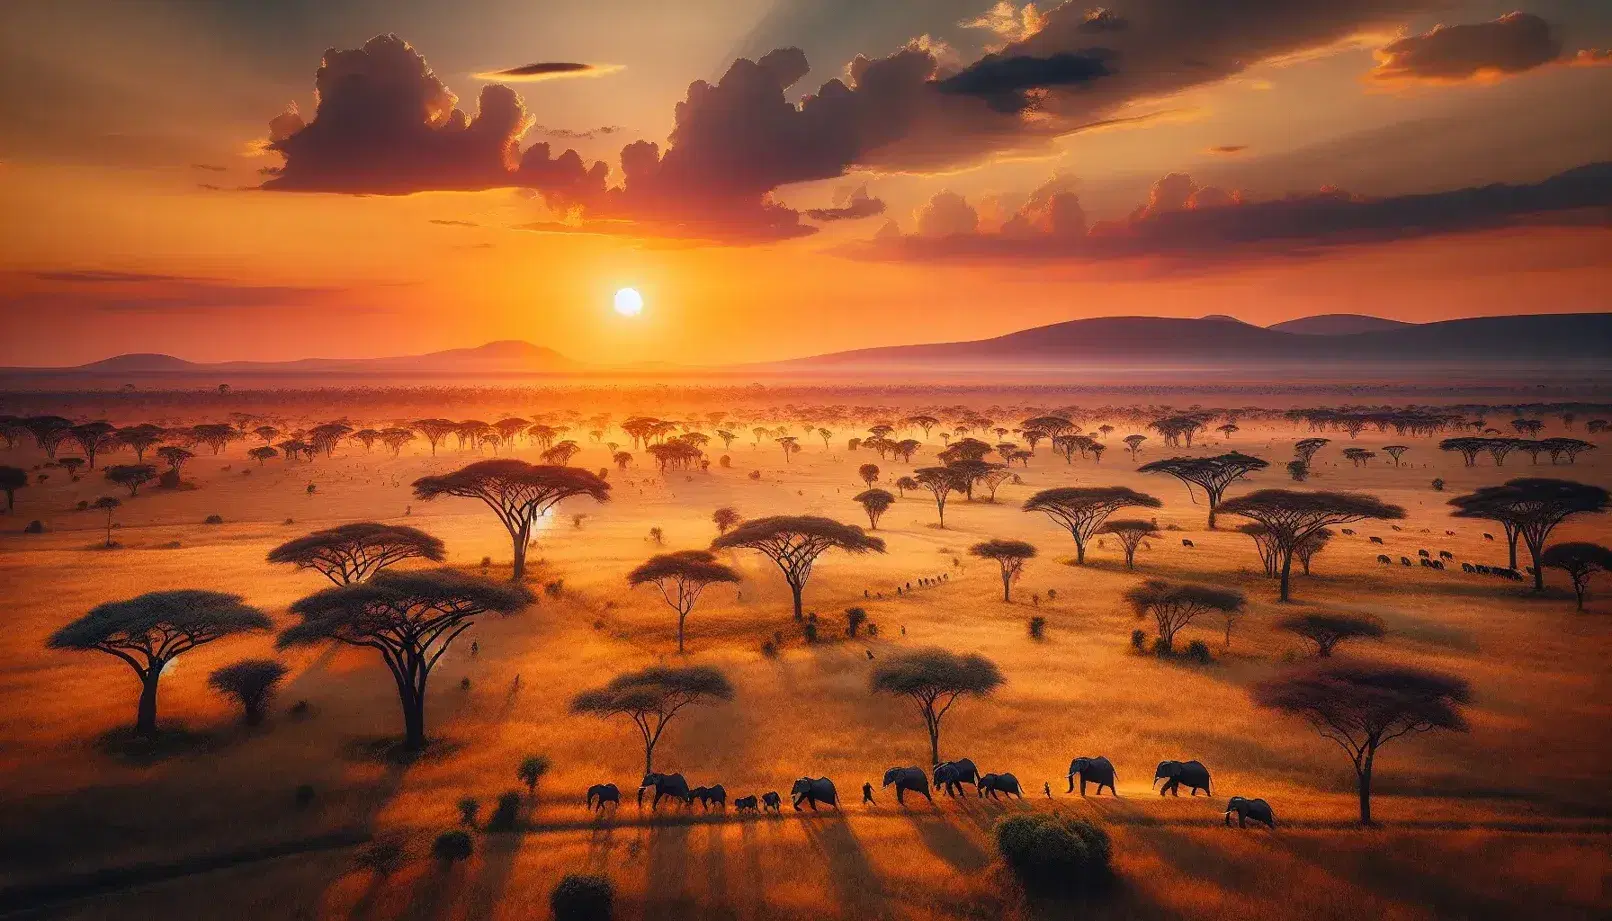 Atardecer en la sabana africana con acacias, sombras alargadas, elefantes en fila y montañas al fondo bajo un cielo degradado.